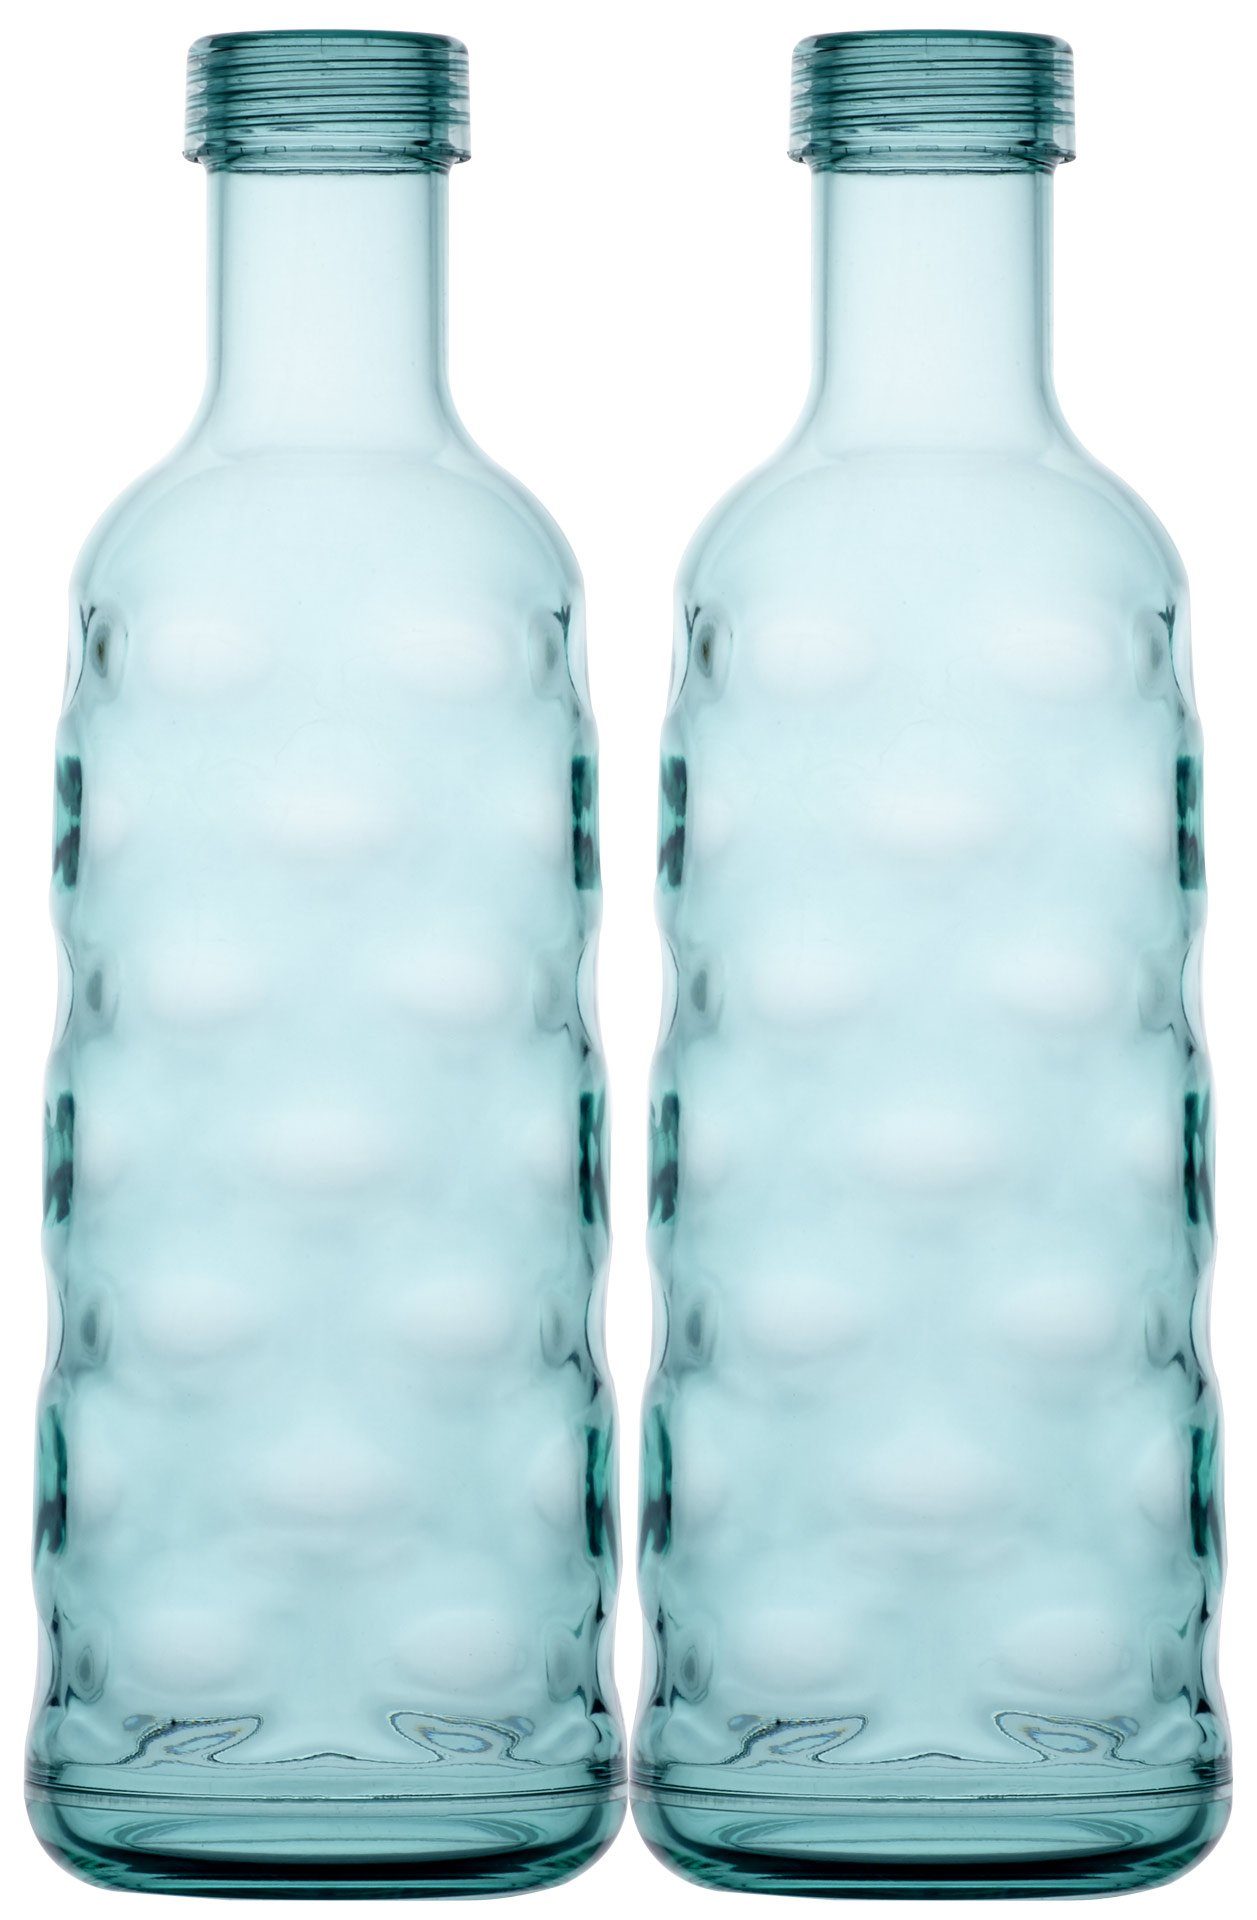 Marine Business Trinkflasche Zwei Flaschen, Geschirr Moon-Acqua, Harmony